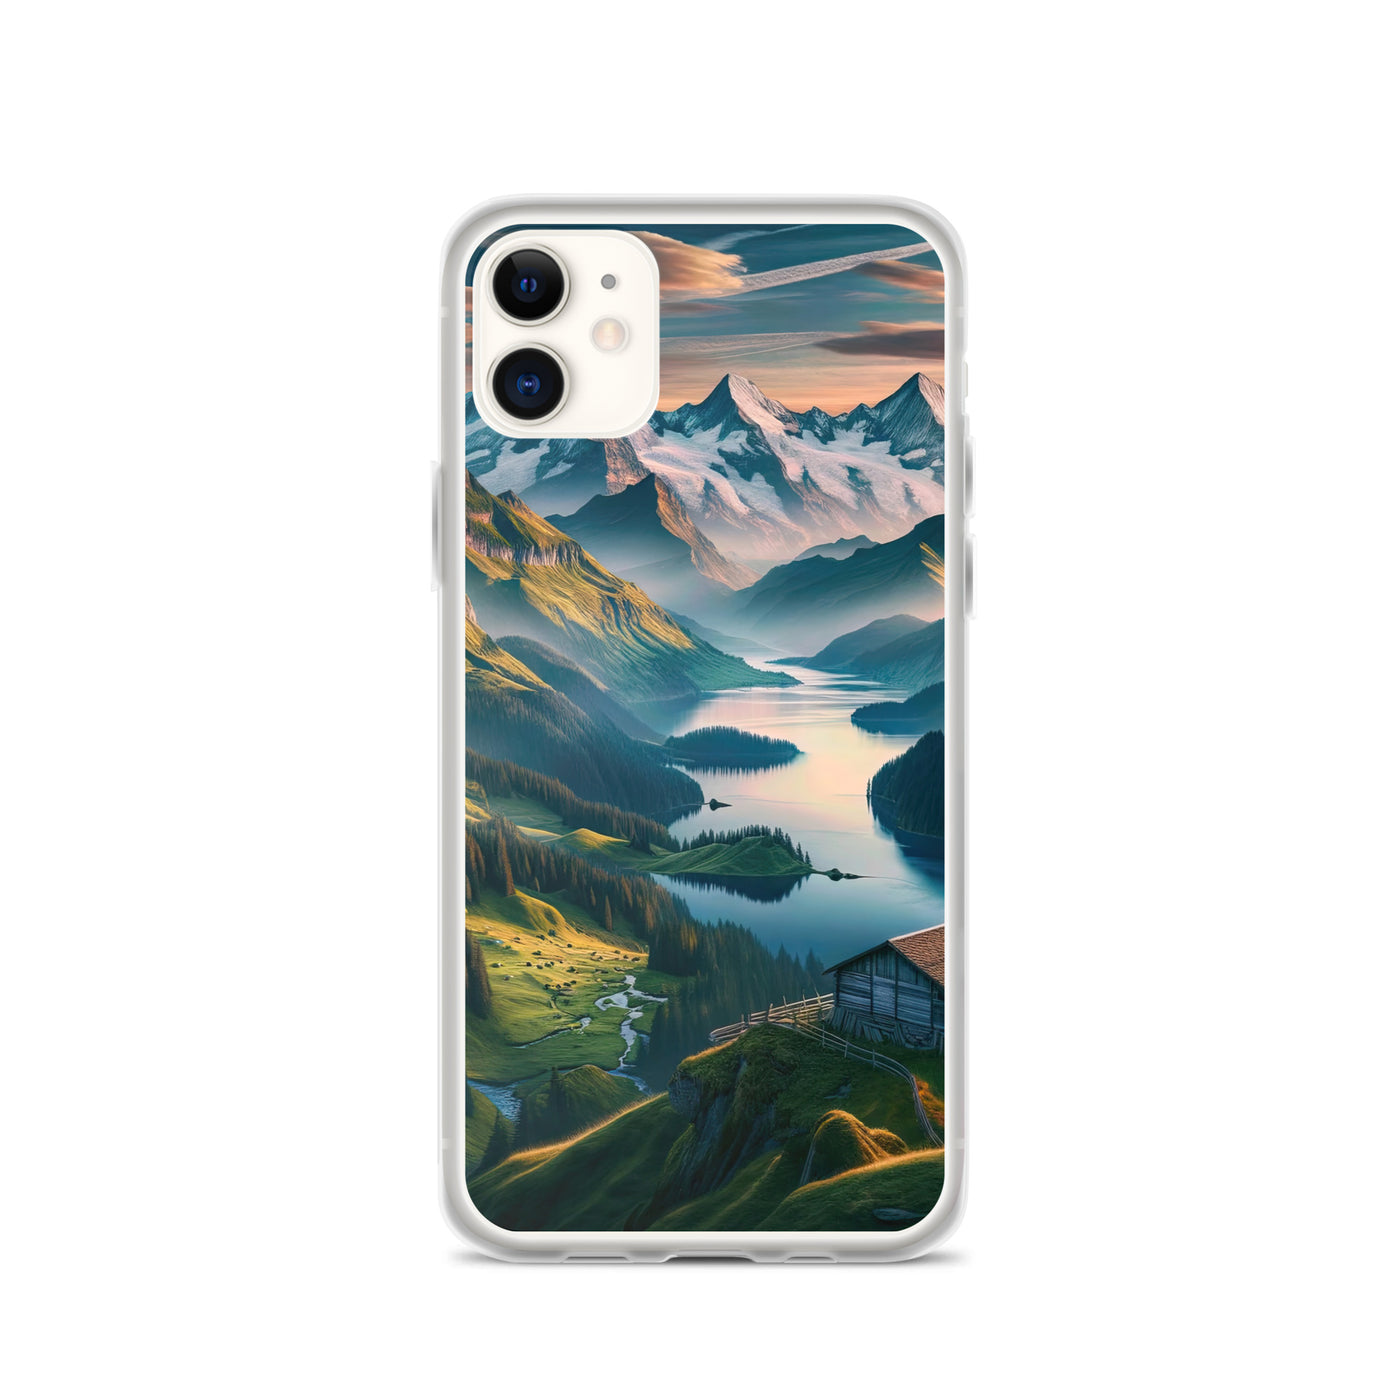 Schweizer Flagge, Alpenidylle: Dämmerlicht, epische Berge und stille Gewässer - iPhone Schutzhülle (durchsichtig) berge xxx yyy zzz iPhone 11